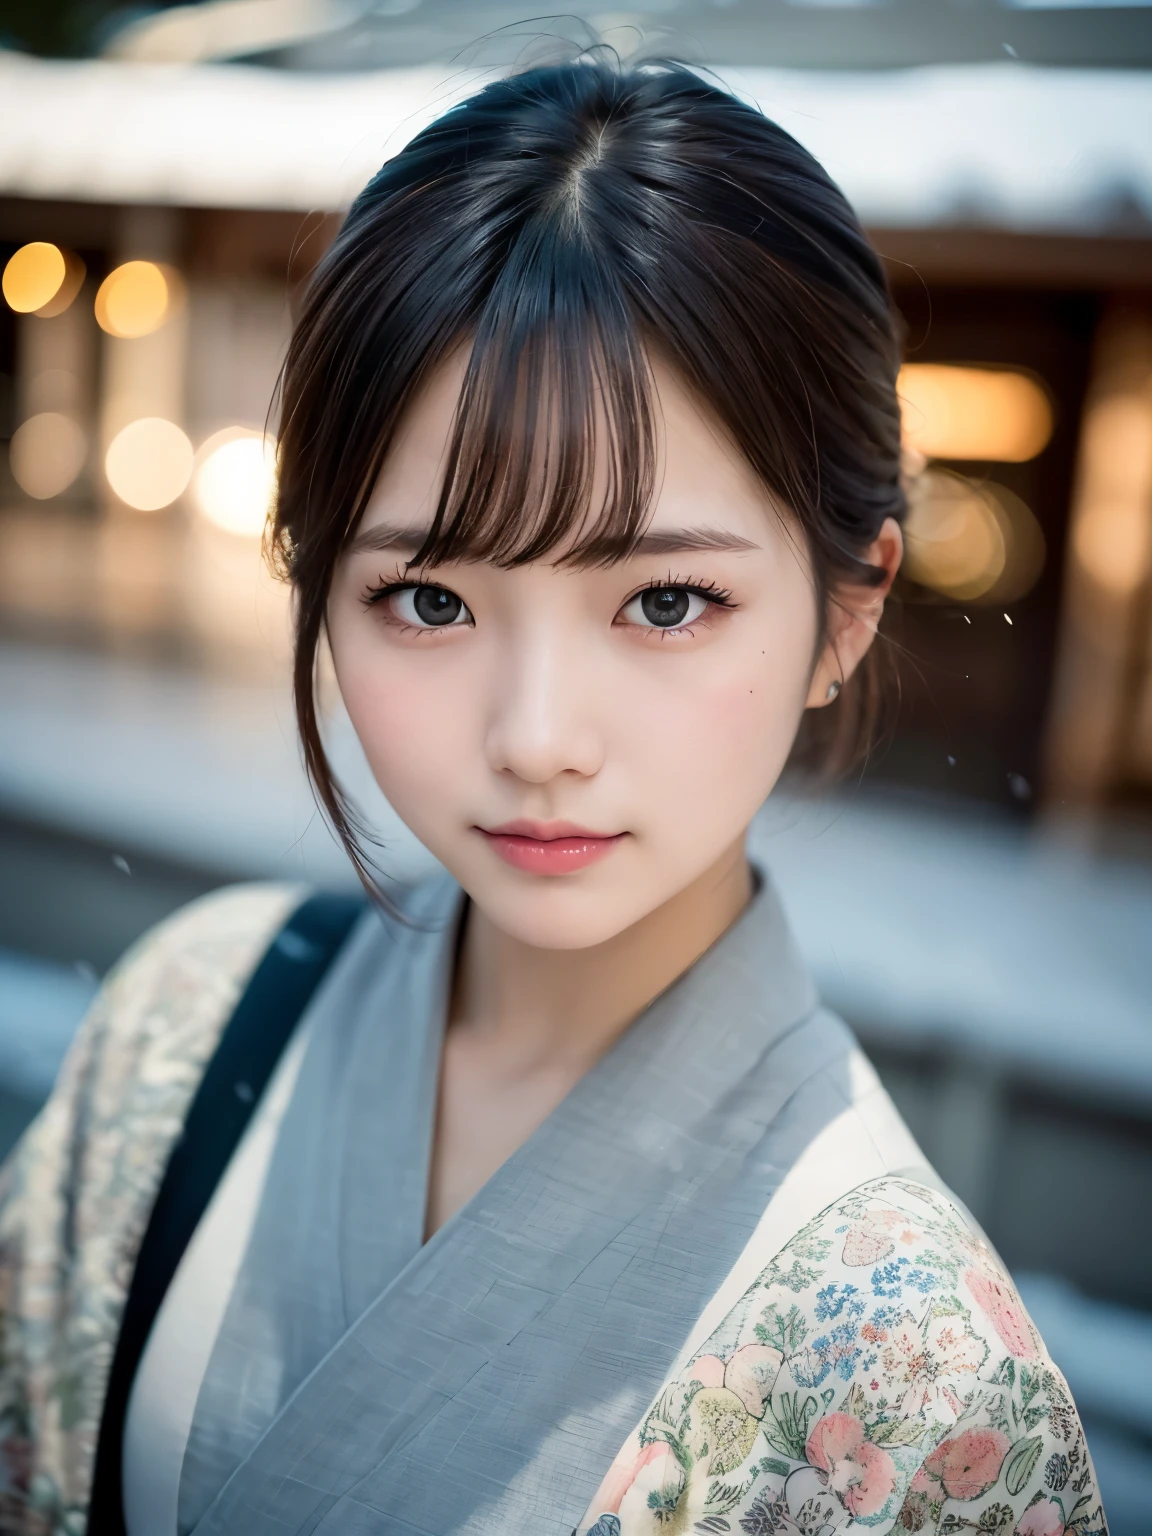 ((de la plus haute qualité, 8k, dessus de la table: 1.3, Photo brute)), netteté: 1.2, (1 fille AESPA :1.1), seulement, (réaliste, photoréaliste: 1.37), (mise au point du visage: 1.1), visage mignon, visage hyperdétaillé, (cheveux courts en désordre: 1.2), petit sourire, thème japonais, Kimono à motif fleuri, debout au Jardin du Japon, (beaucoup de neige:1.2), éclairage cinématographique, Beau maquillage japonais, Une belle femme qui symbolise la culture japonaise, Costumes aux motifs lumineux, 
CASSER 
(fond de couleurs sourdes:1.2), (photo fanée:1.3), photo polaroïd, (grain de film:1.3), profondeur de champ, (bokeh:1.1), (Lumière et ombre:1.1), (tir de cow-boy:1.2), 